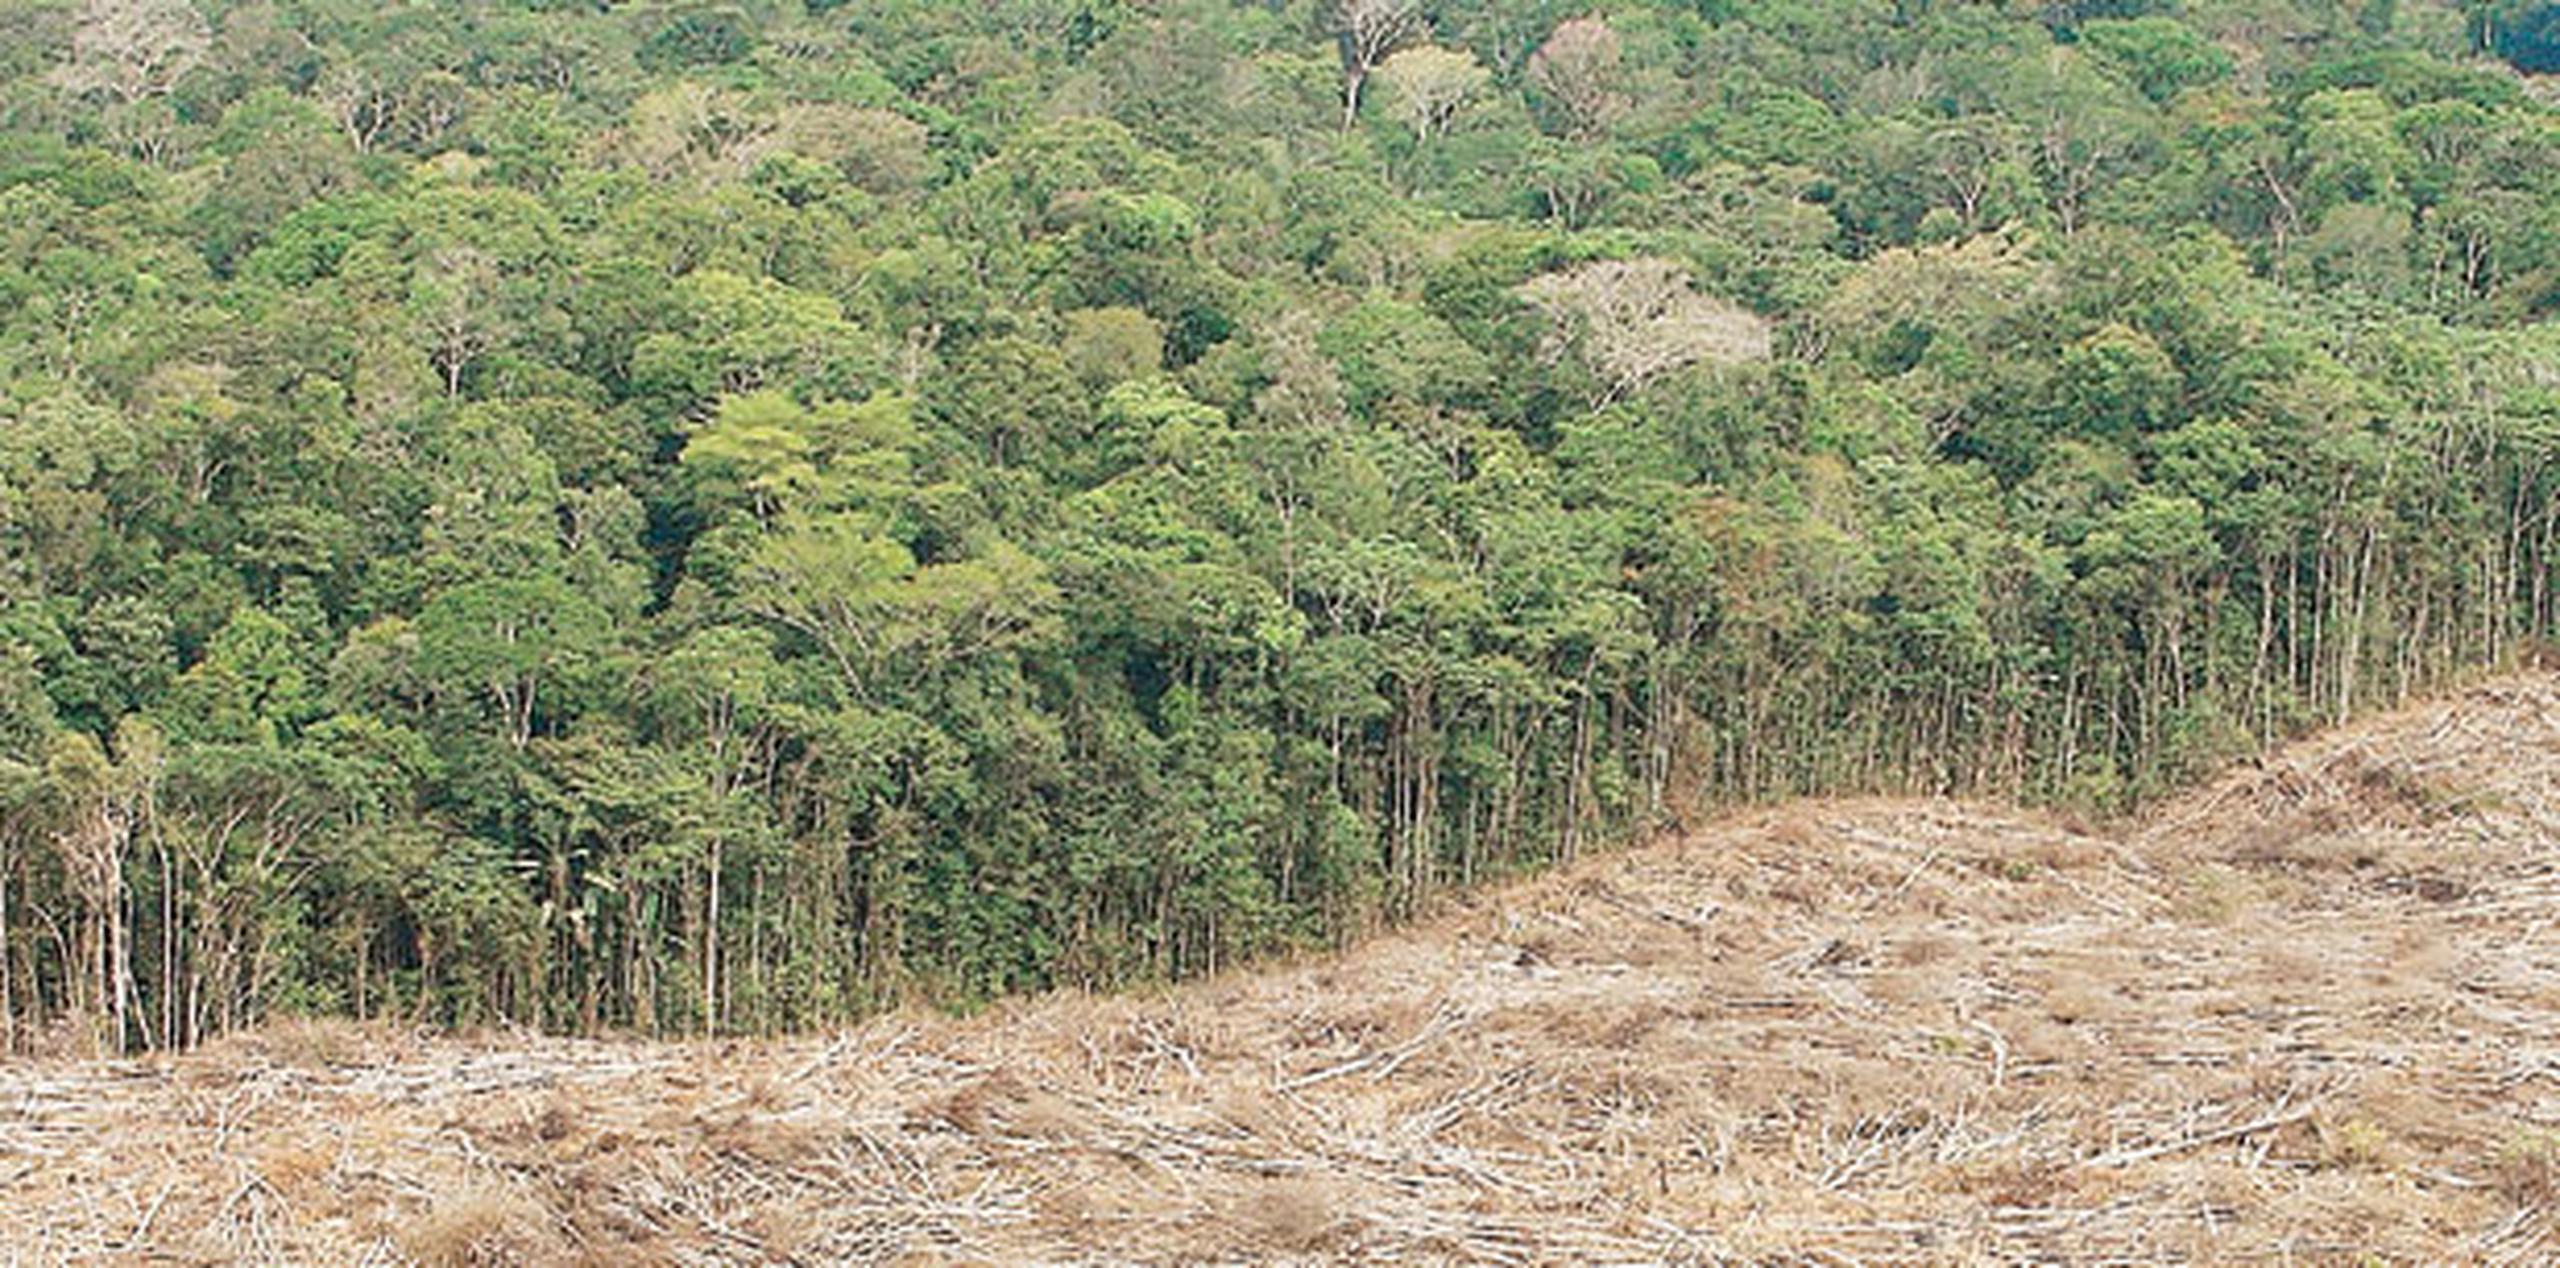 En las últimas décadas, los bosques inundados se han visto seriamente amenazados por la explotación forestal. (Archivo)